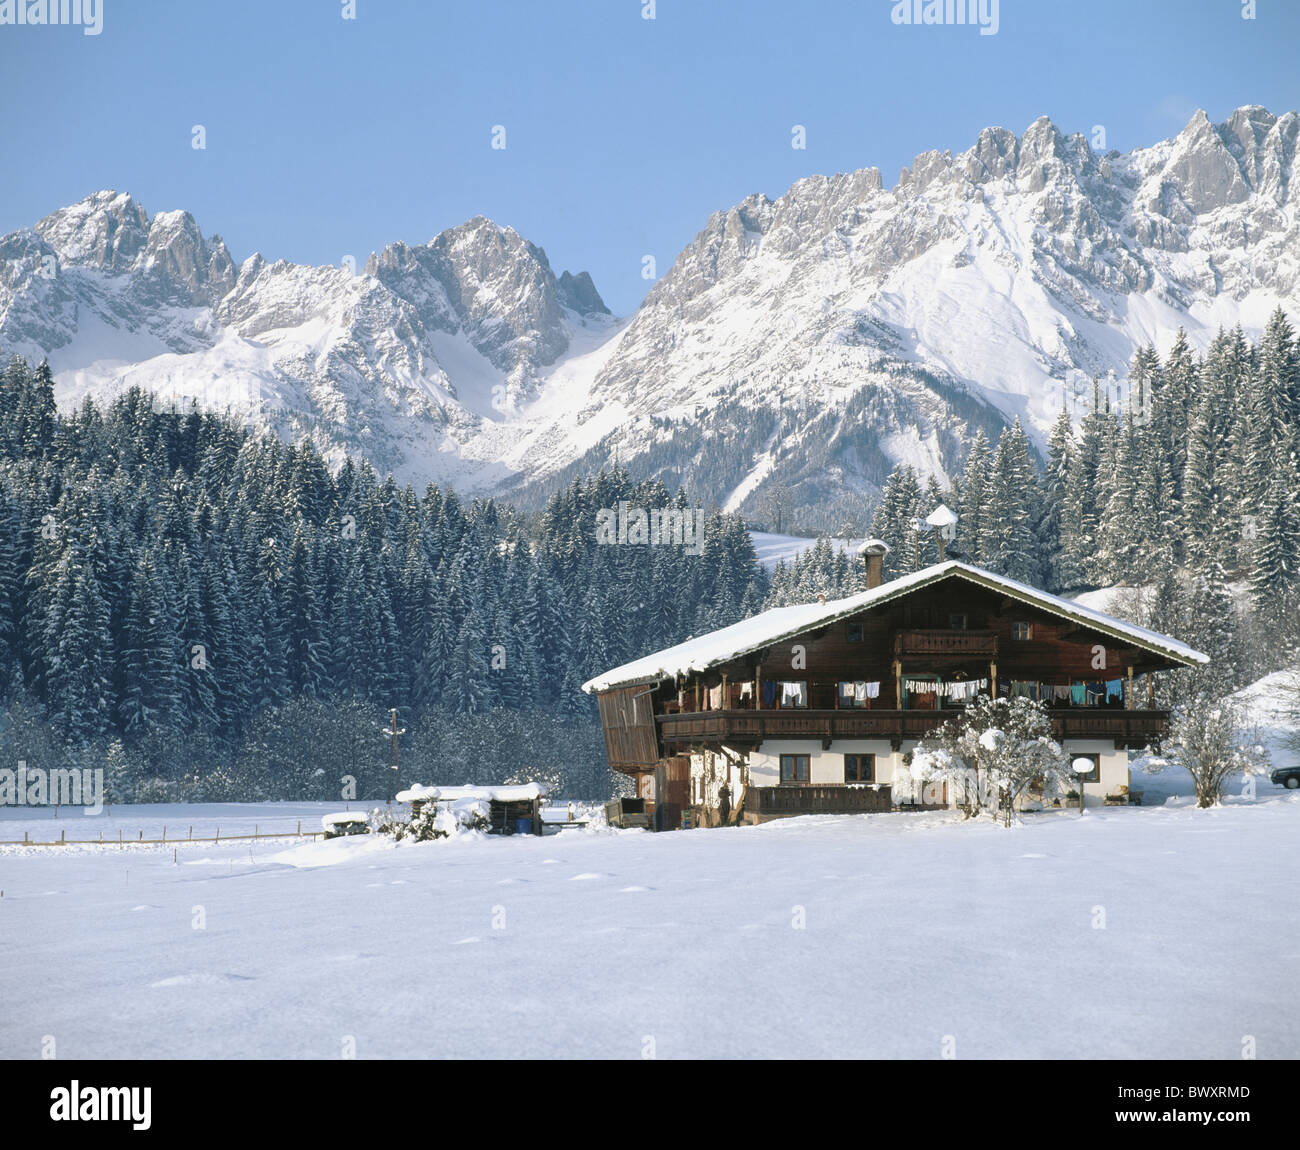 Maison de ferme accueil superstructure en bois Kitzbuhel Autriche Europe Tyrol hiver Wilder Kaiser Banque D'Images